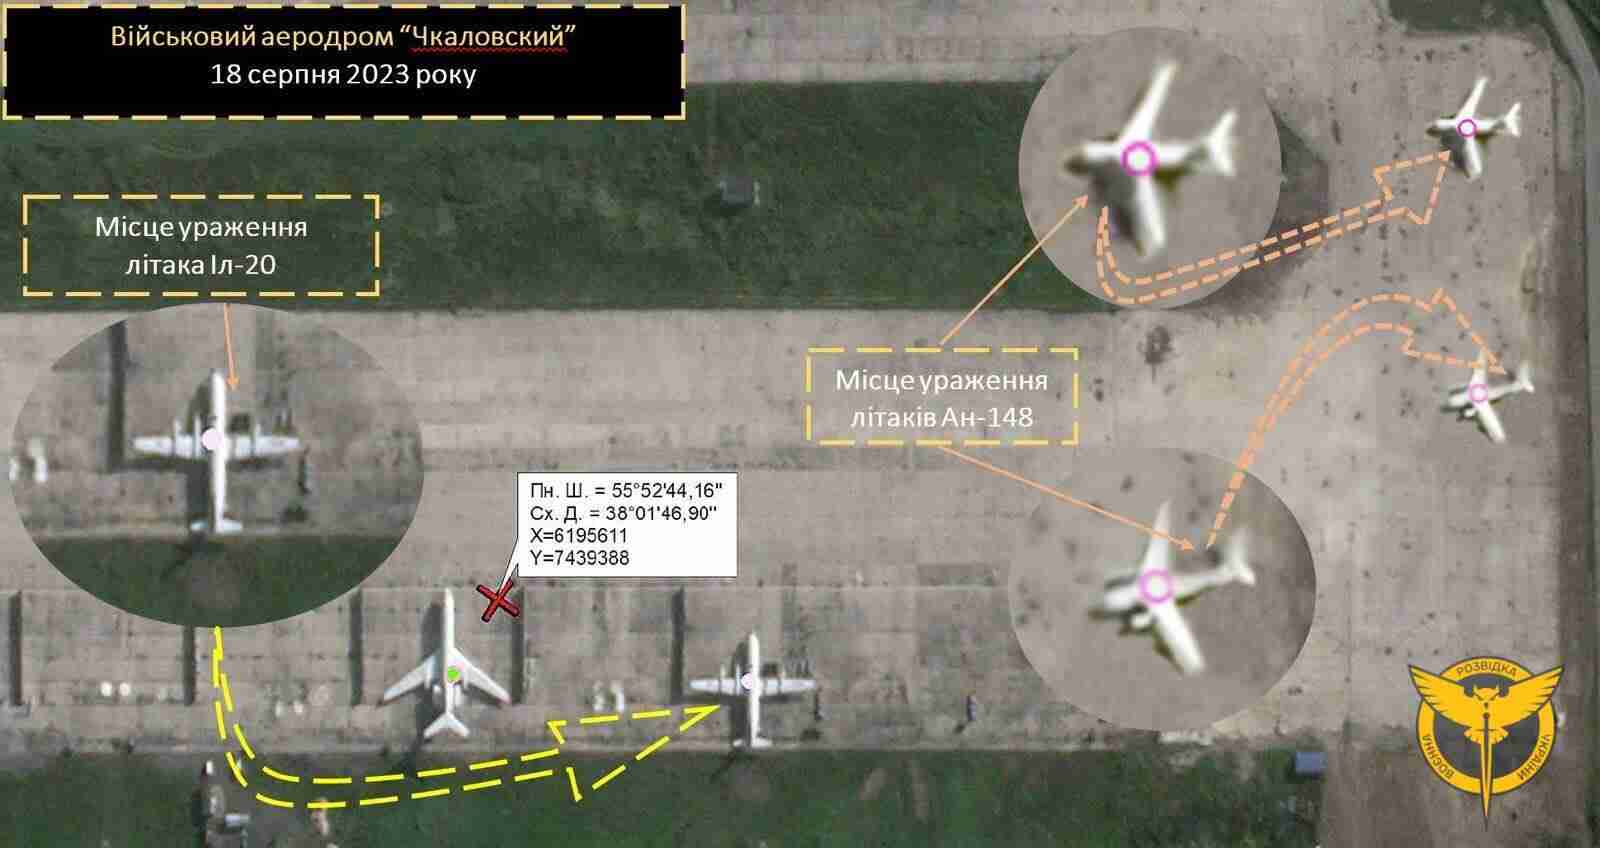 Диверсанти підірвали два літаки та гелікоптер на аеродромі у Підмосковʼї - ГУР (ФОТО)